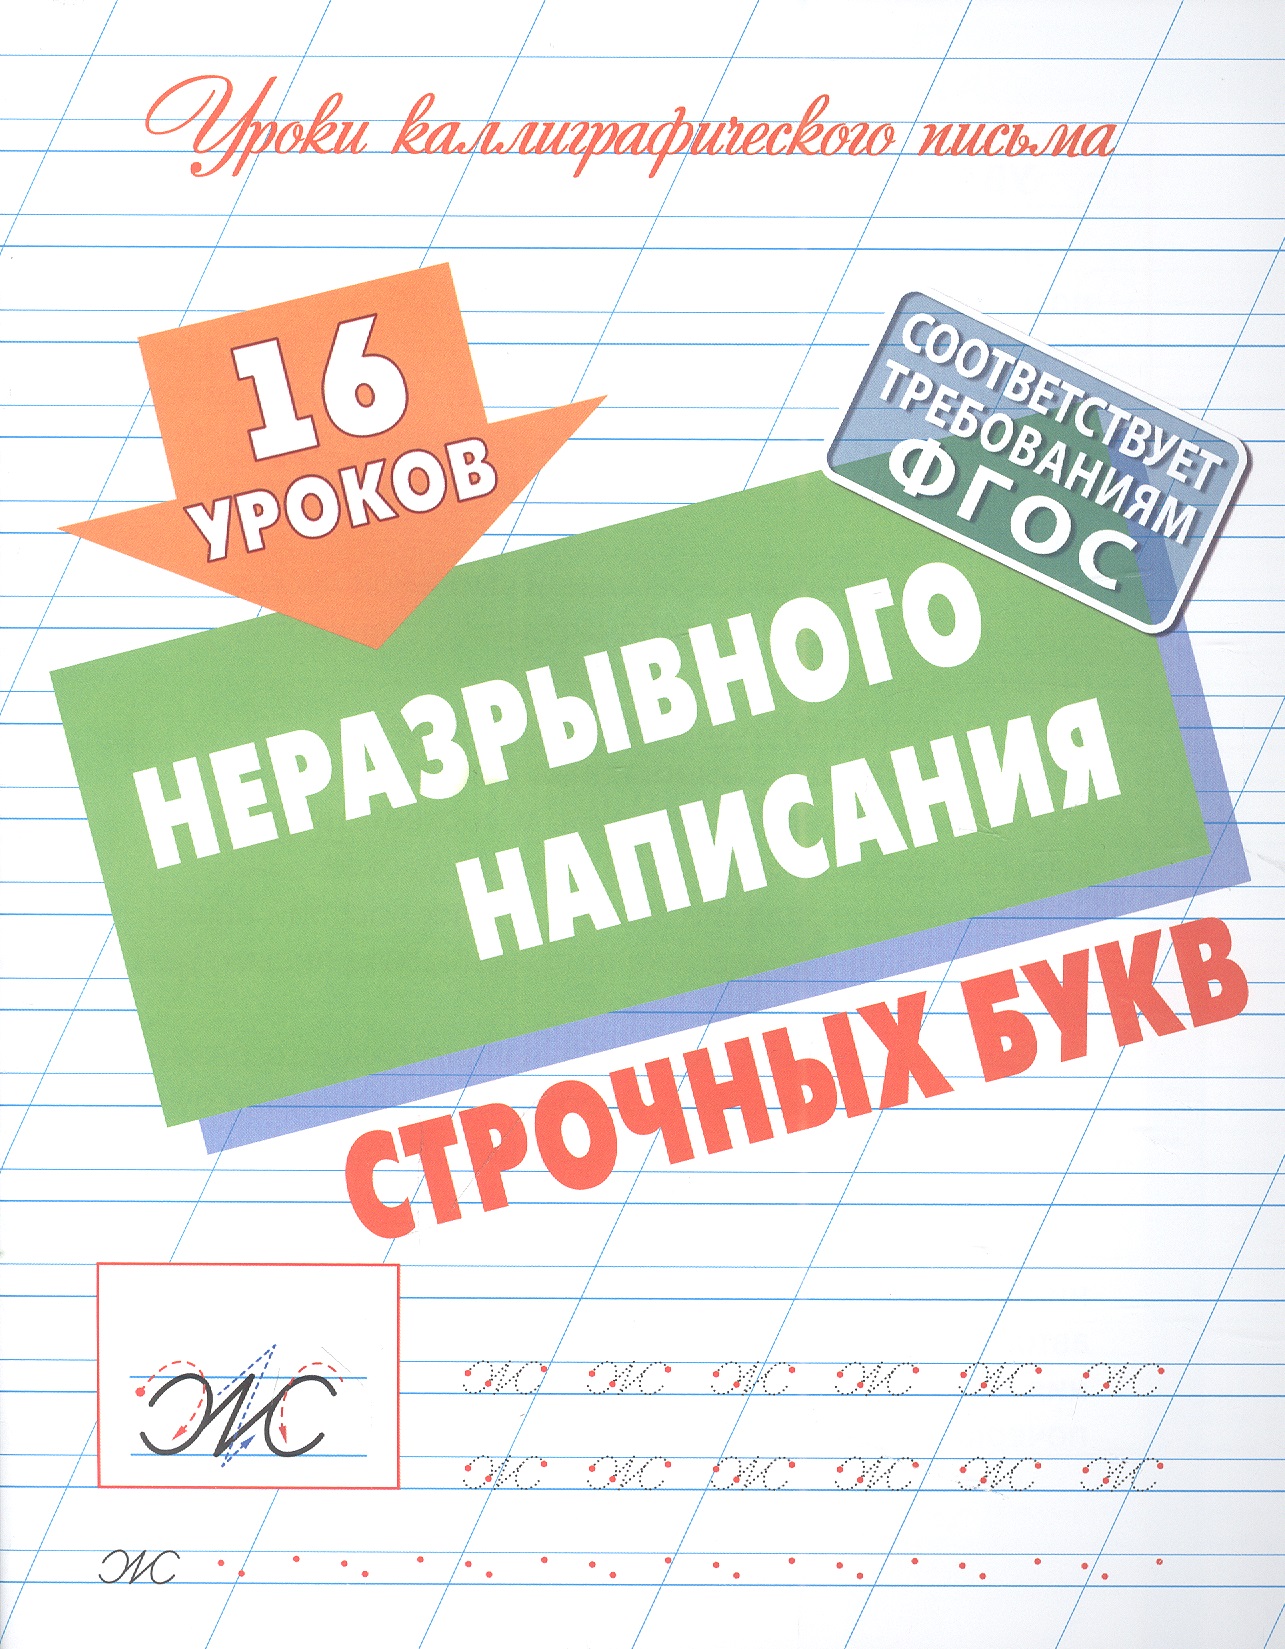 Петренко Станислав Викторович 16 уроков неразрывного написания строчных букв упражнения для каллиграфического написания строчных букв